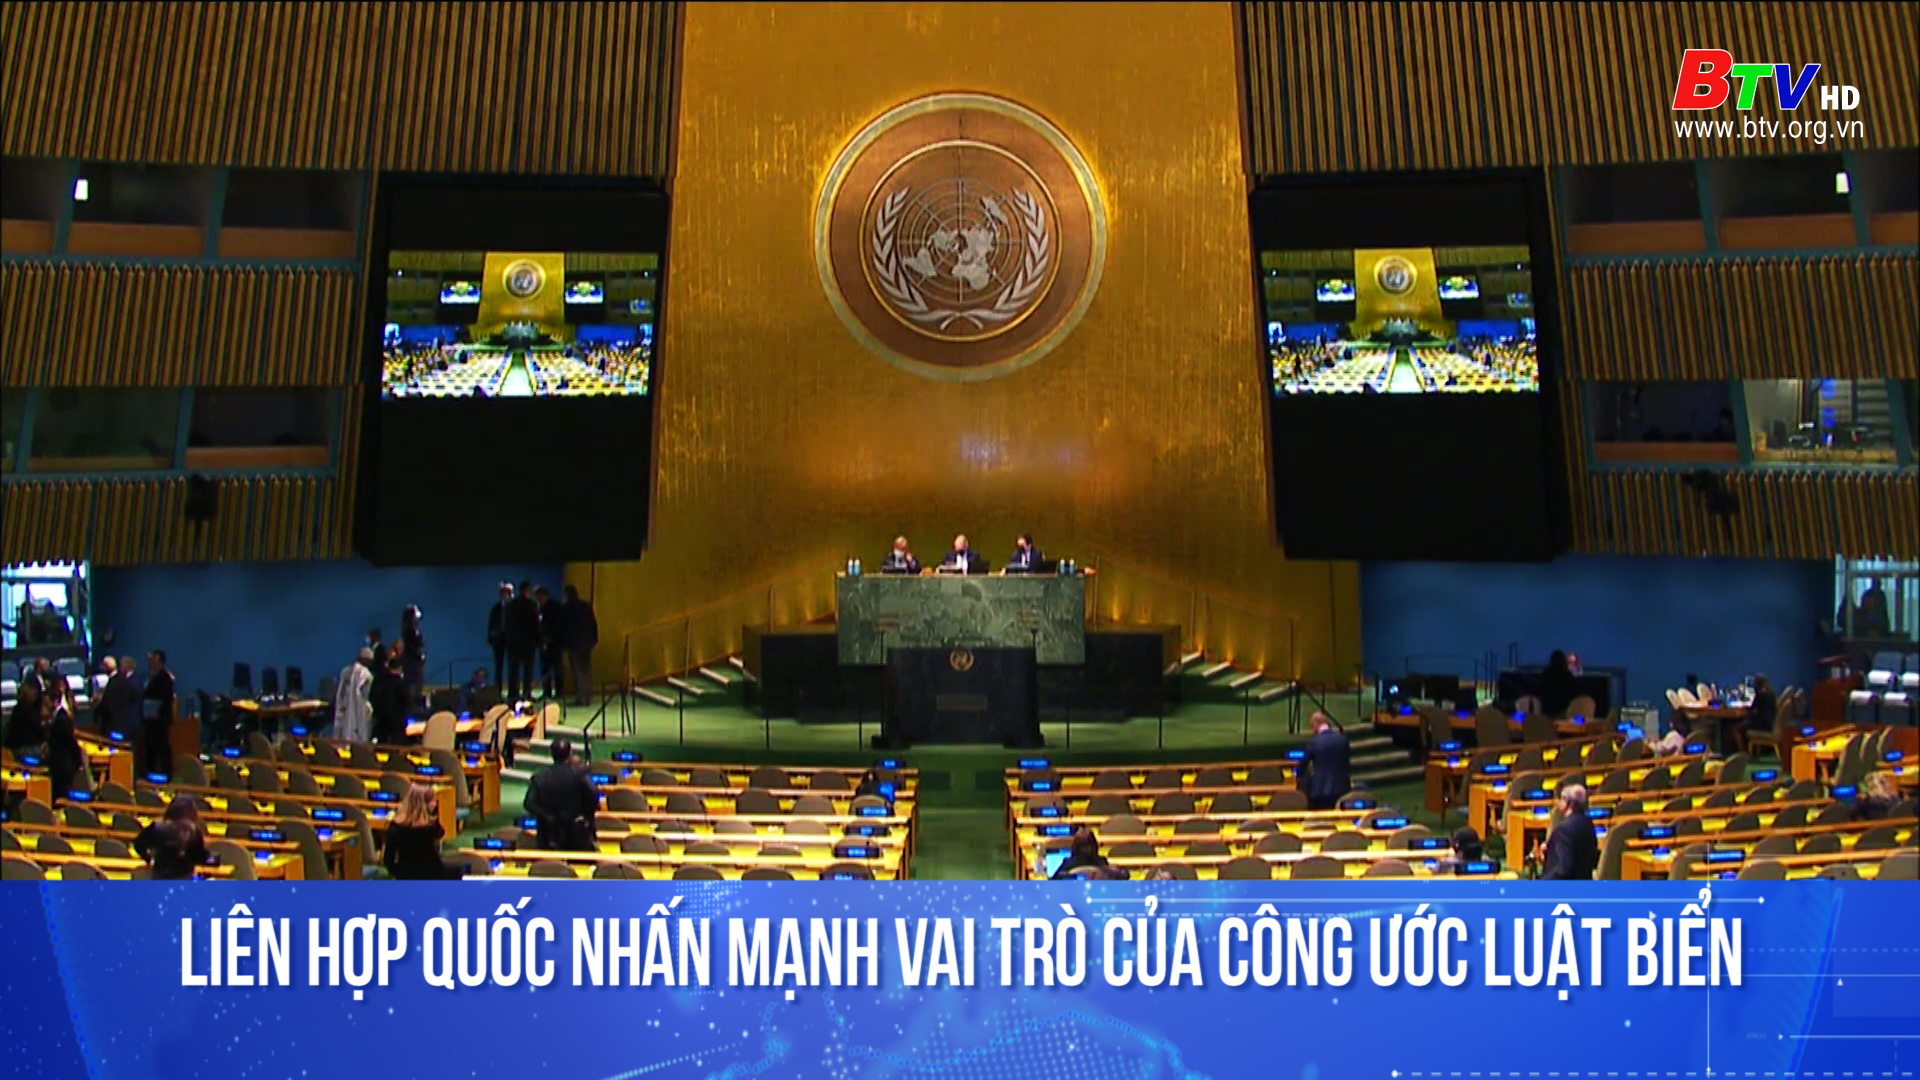 Liên hợp quốc nhấn mạnh vai trò của công ước Luật Biển